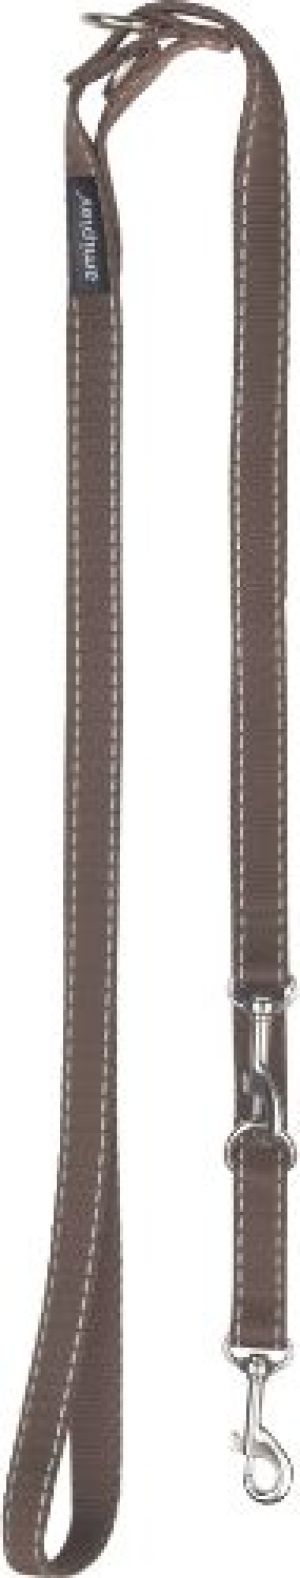 Ami Play Smycz regulowana 6 in 1 Reflective XL 100-200 x 2,5cm Brązowy 1